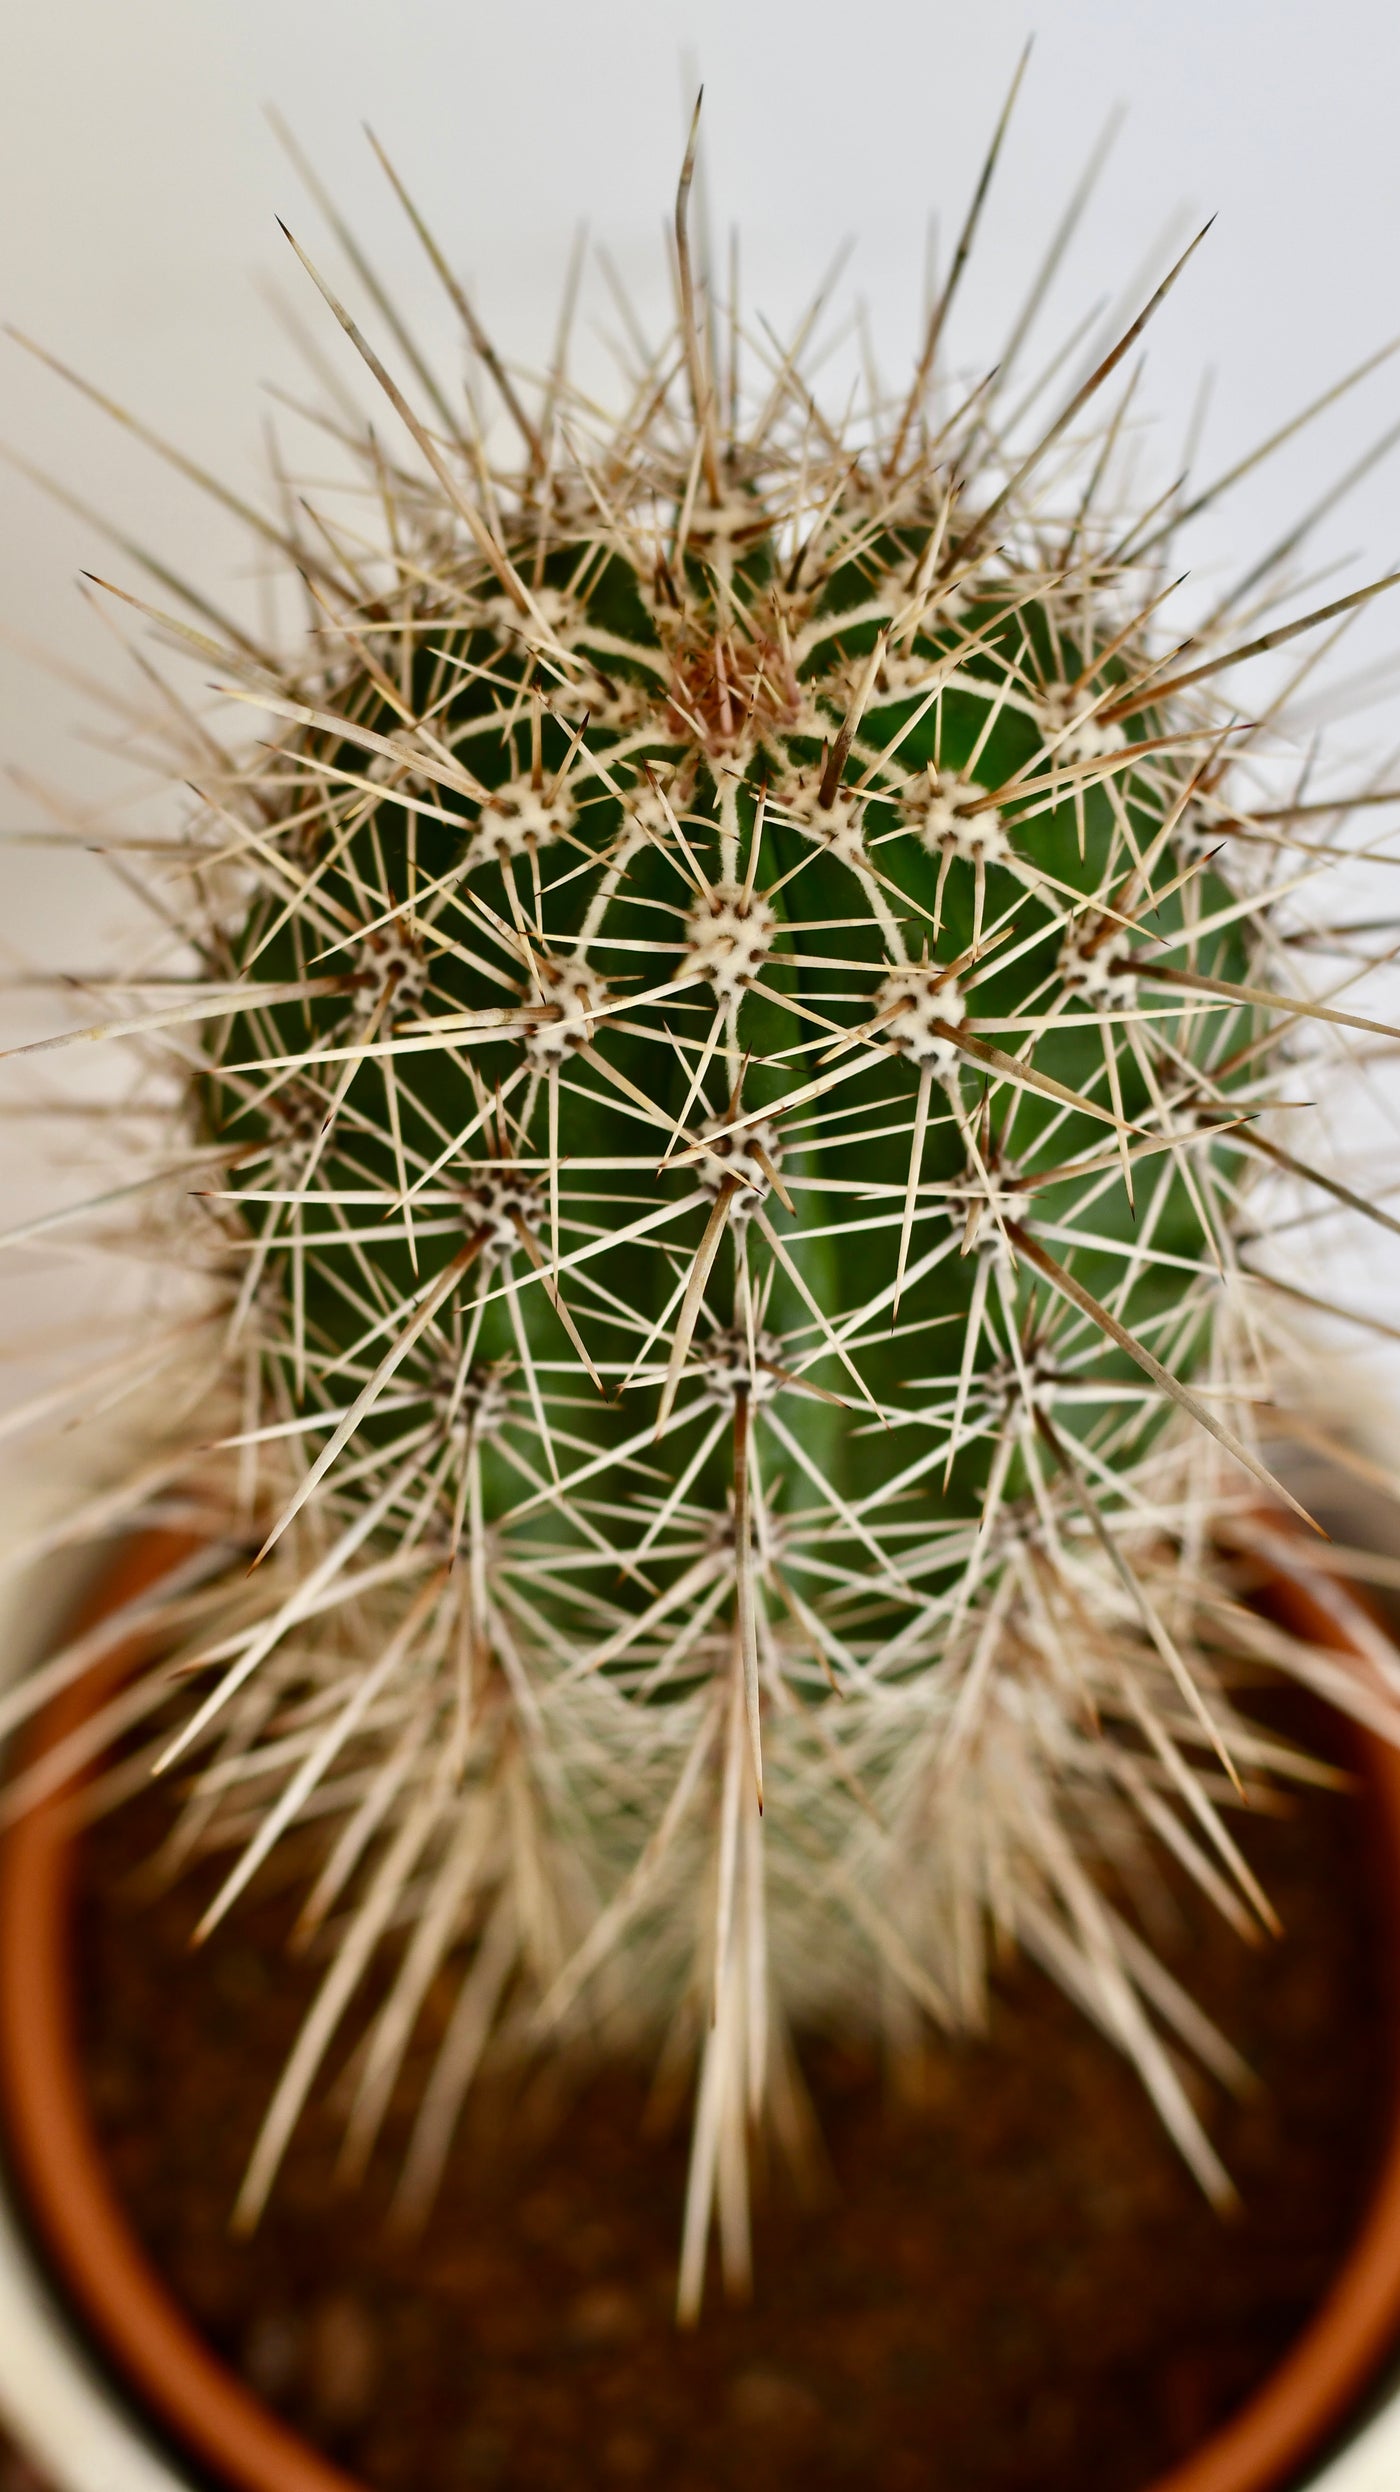 Pachycereus pringlei, Cardon Cactus or Mexican Giant Cardon